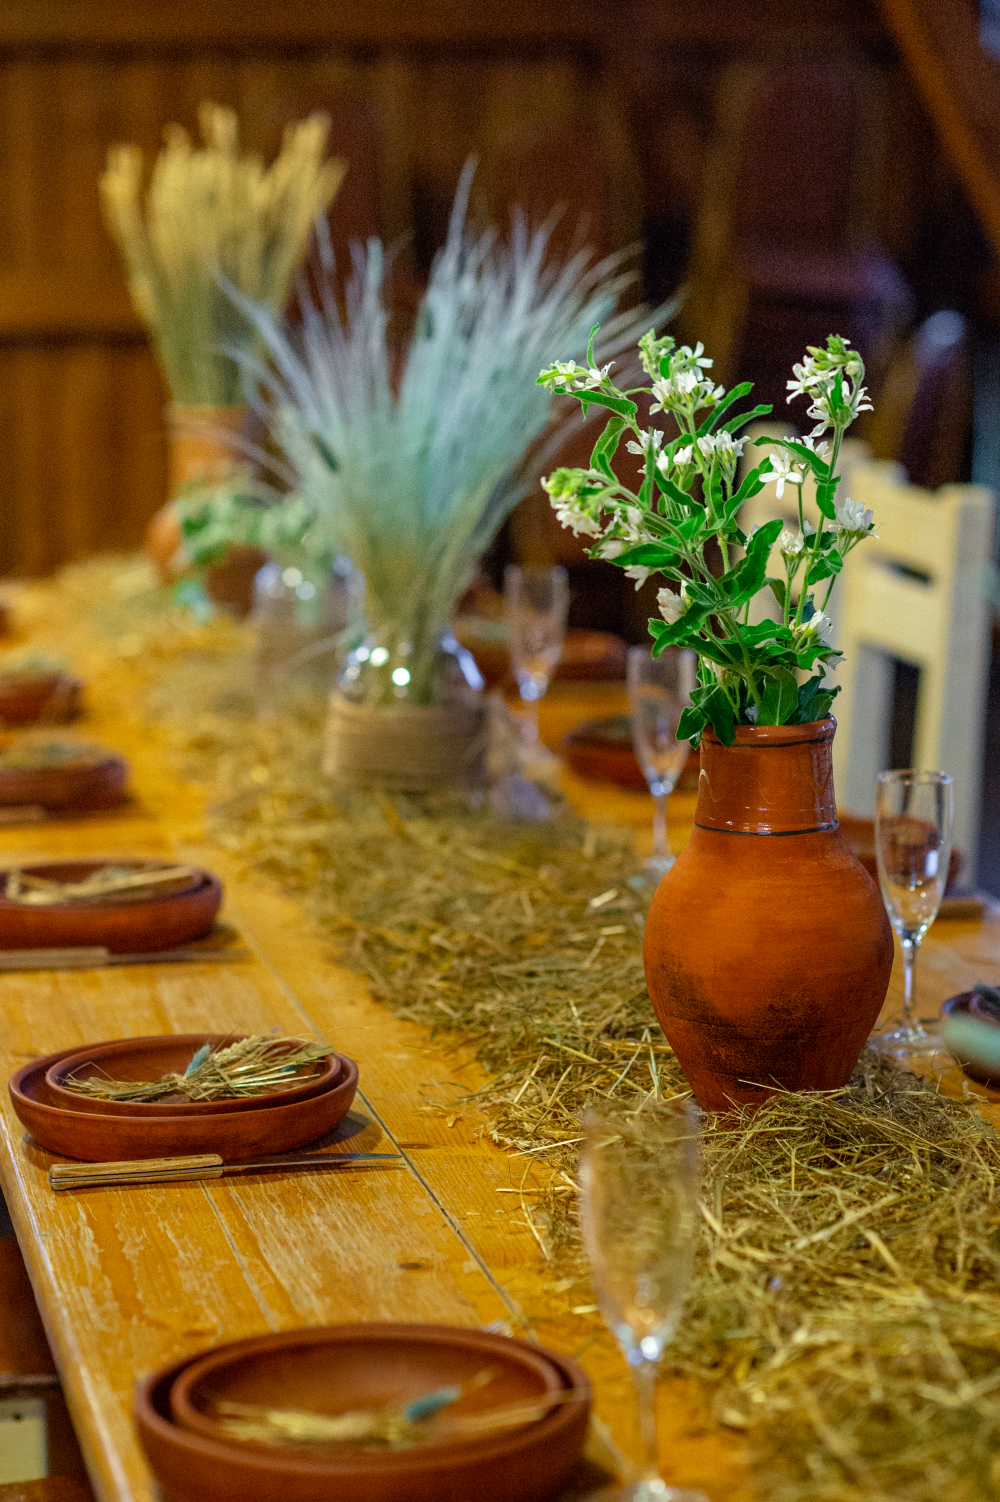 Детали свадьбы в эко-стиле. Злаки, травы, солома и глиняная посуда - такой декор очень гармонично вписался в интерьер эко-фермы